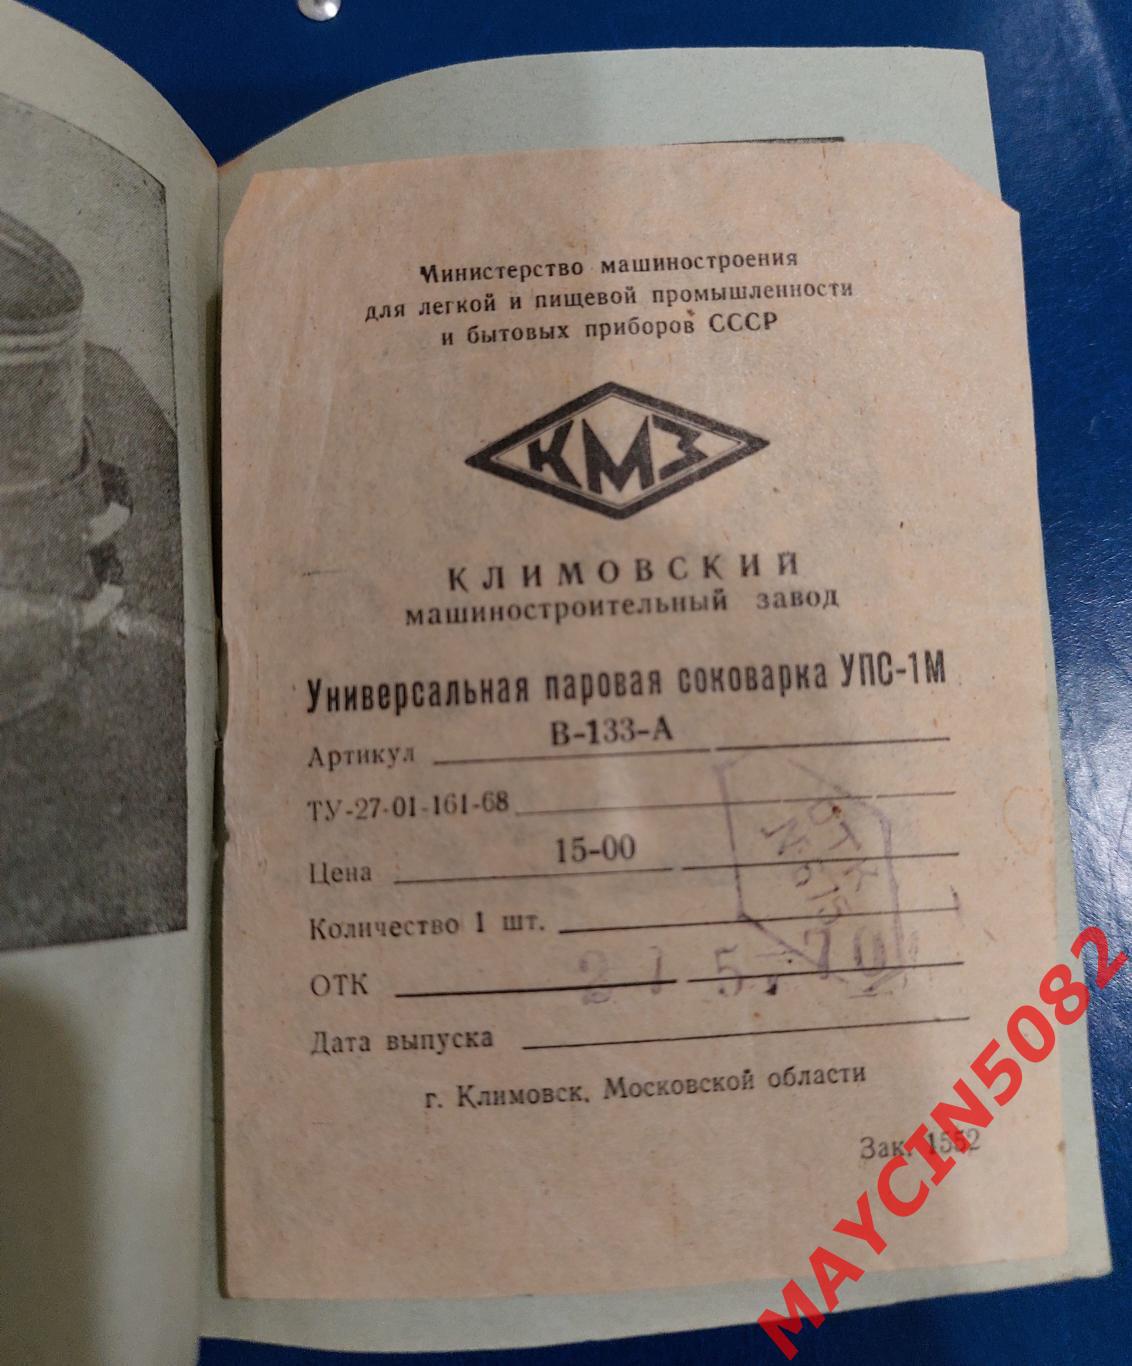 Инструкция. Паровая соковарка. 1970 год. Климовск. 1